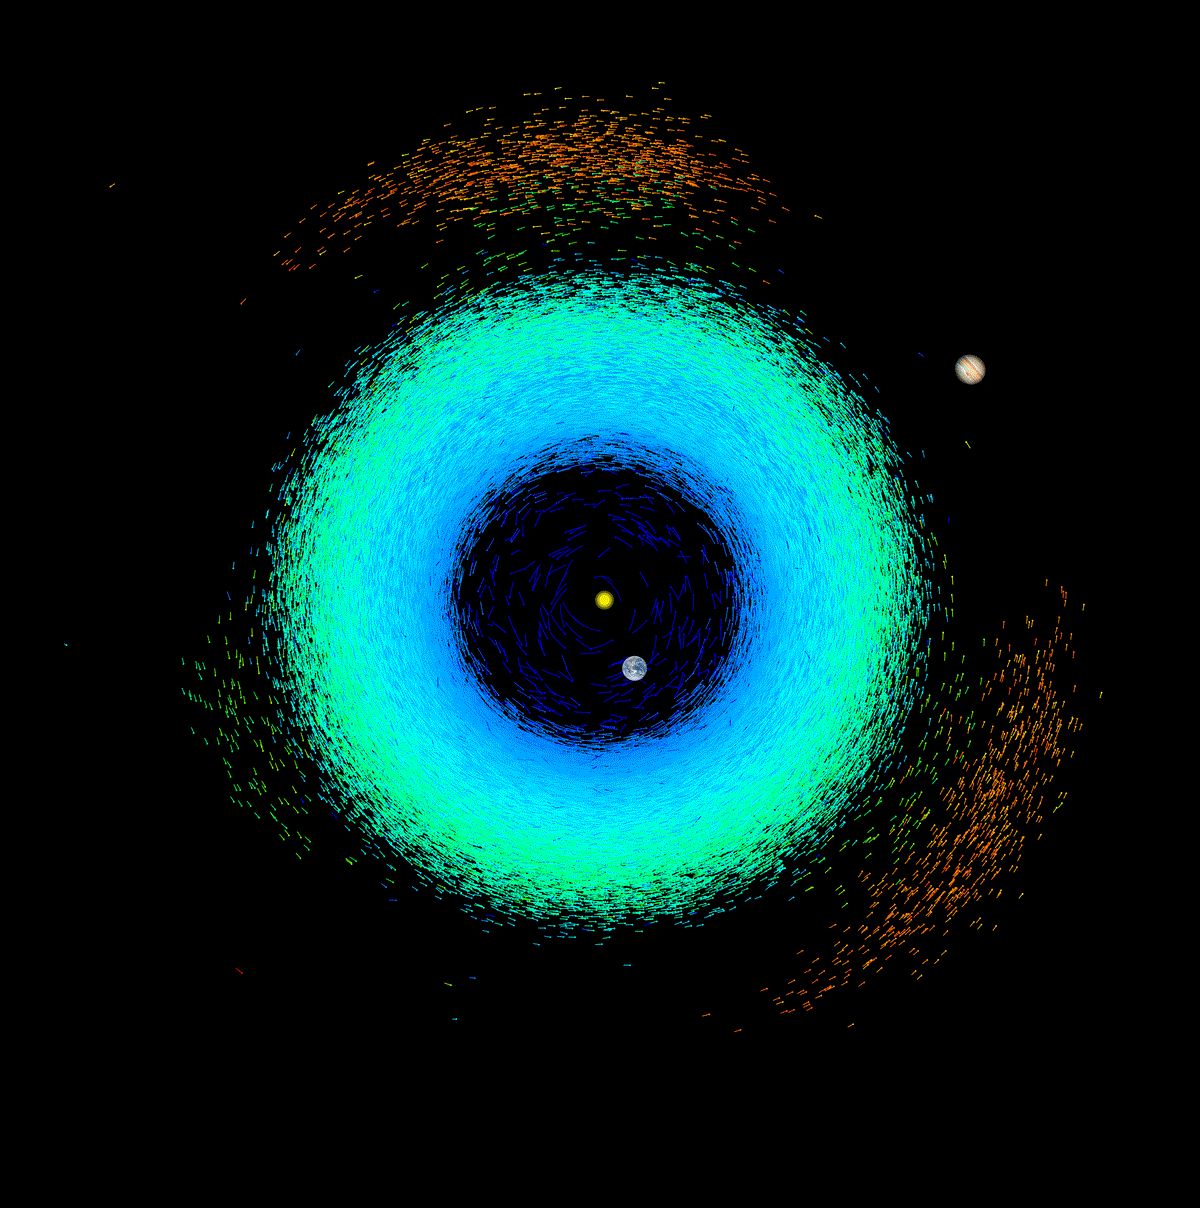 אסטרואידים סביב השמש כפי שנראו על ידי גאיה. כל אסטרואיד הוא מקטע המייצג את תנועתו במשך 10 ימים (כאשר הרצועה הכחולה מייצגת את מערכת השמש הפנימית).  ESA/Gaia/DPAC, CC BY-ND